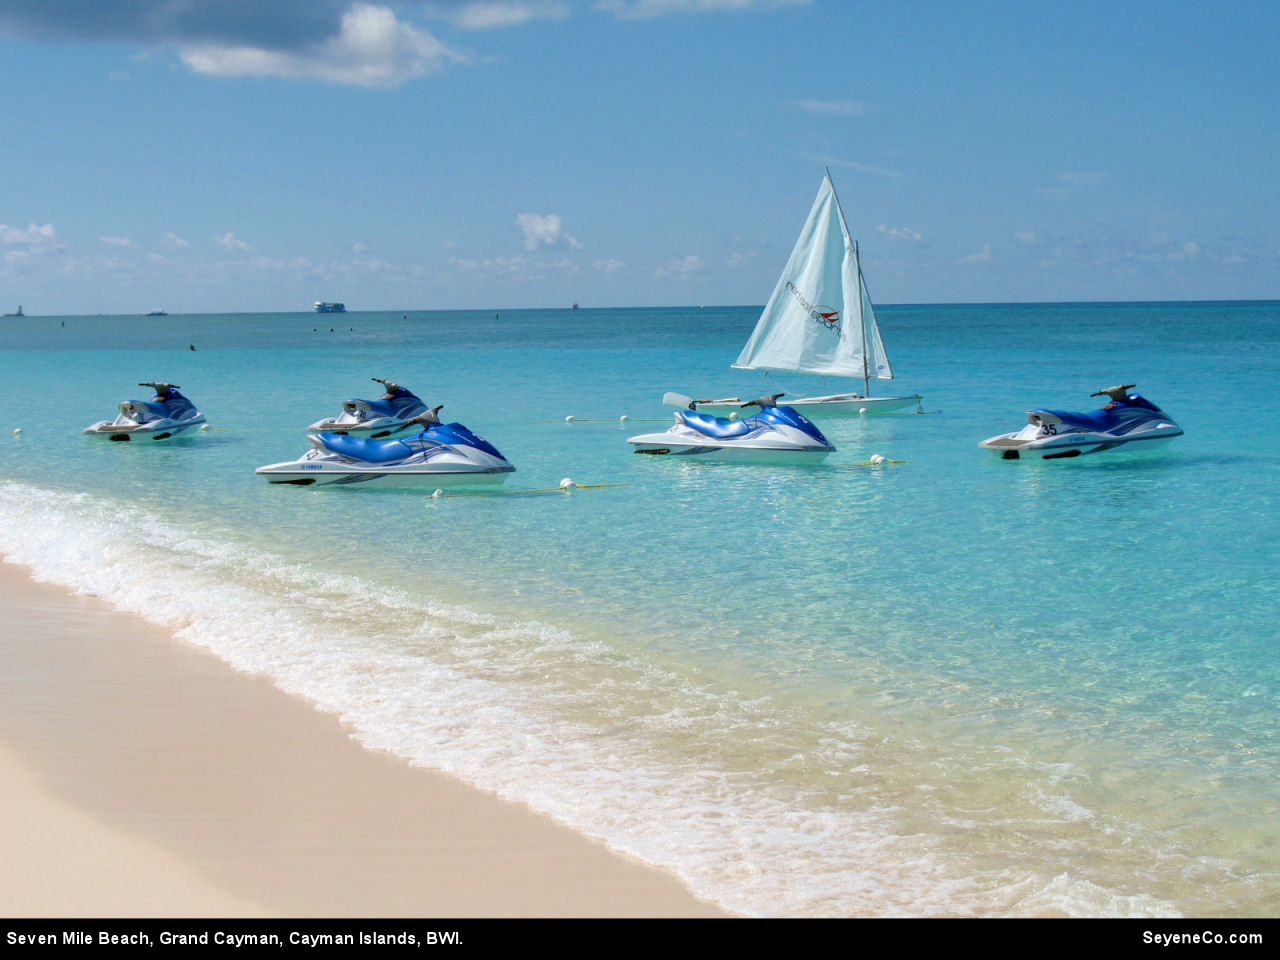 Free Cayman Islands Desktop Wallpaper from SeyeneCo